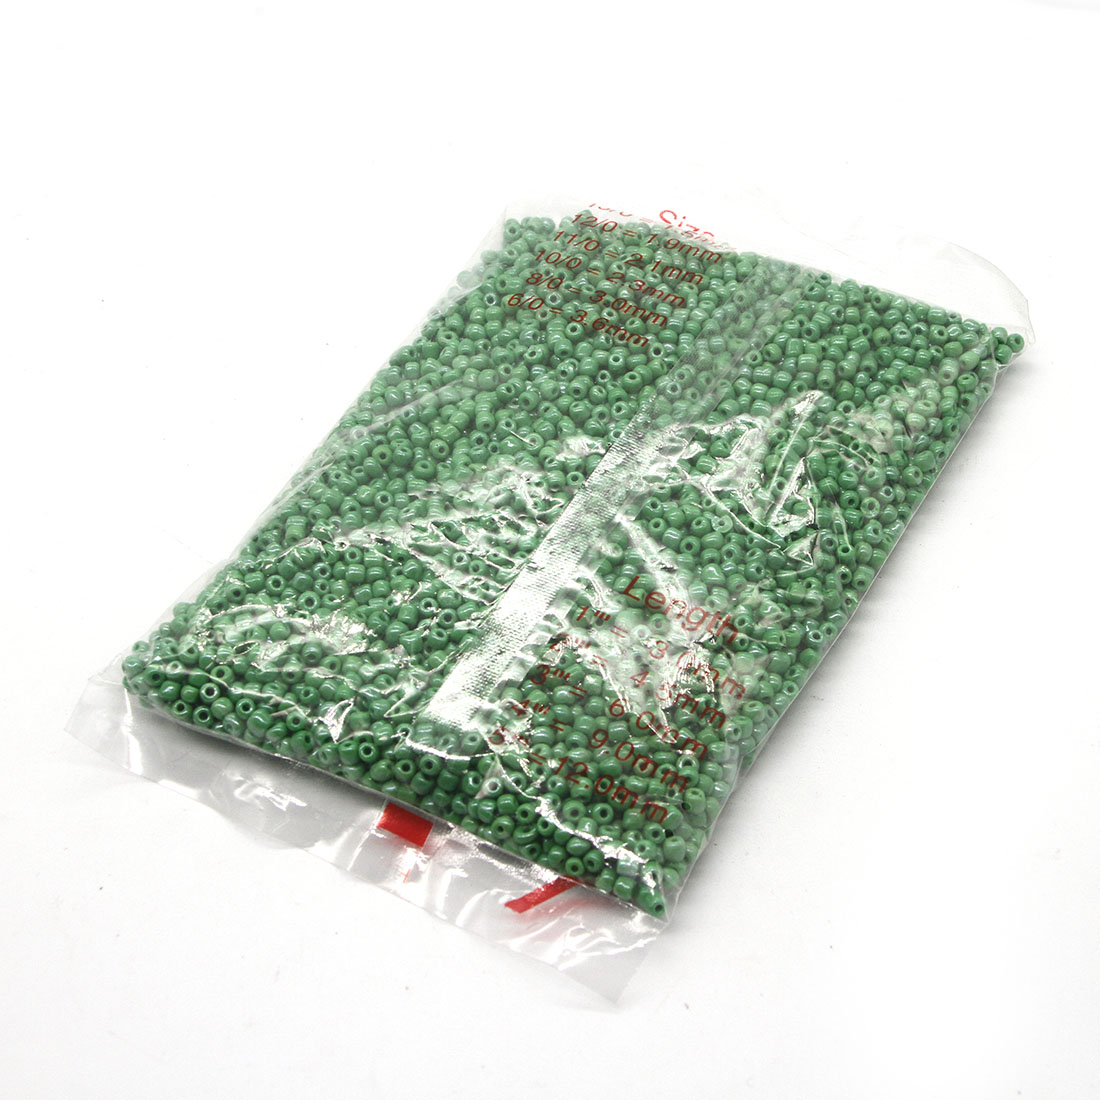 Grass green 4mm 4500 packs